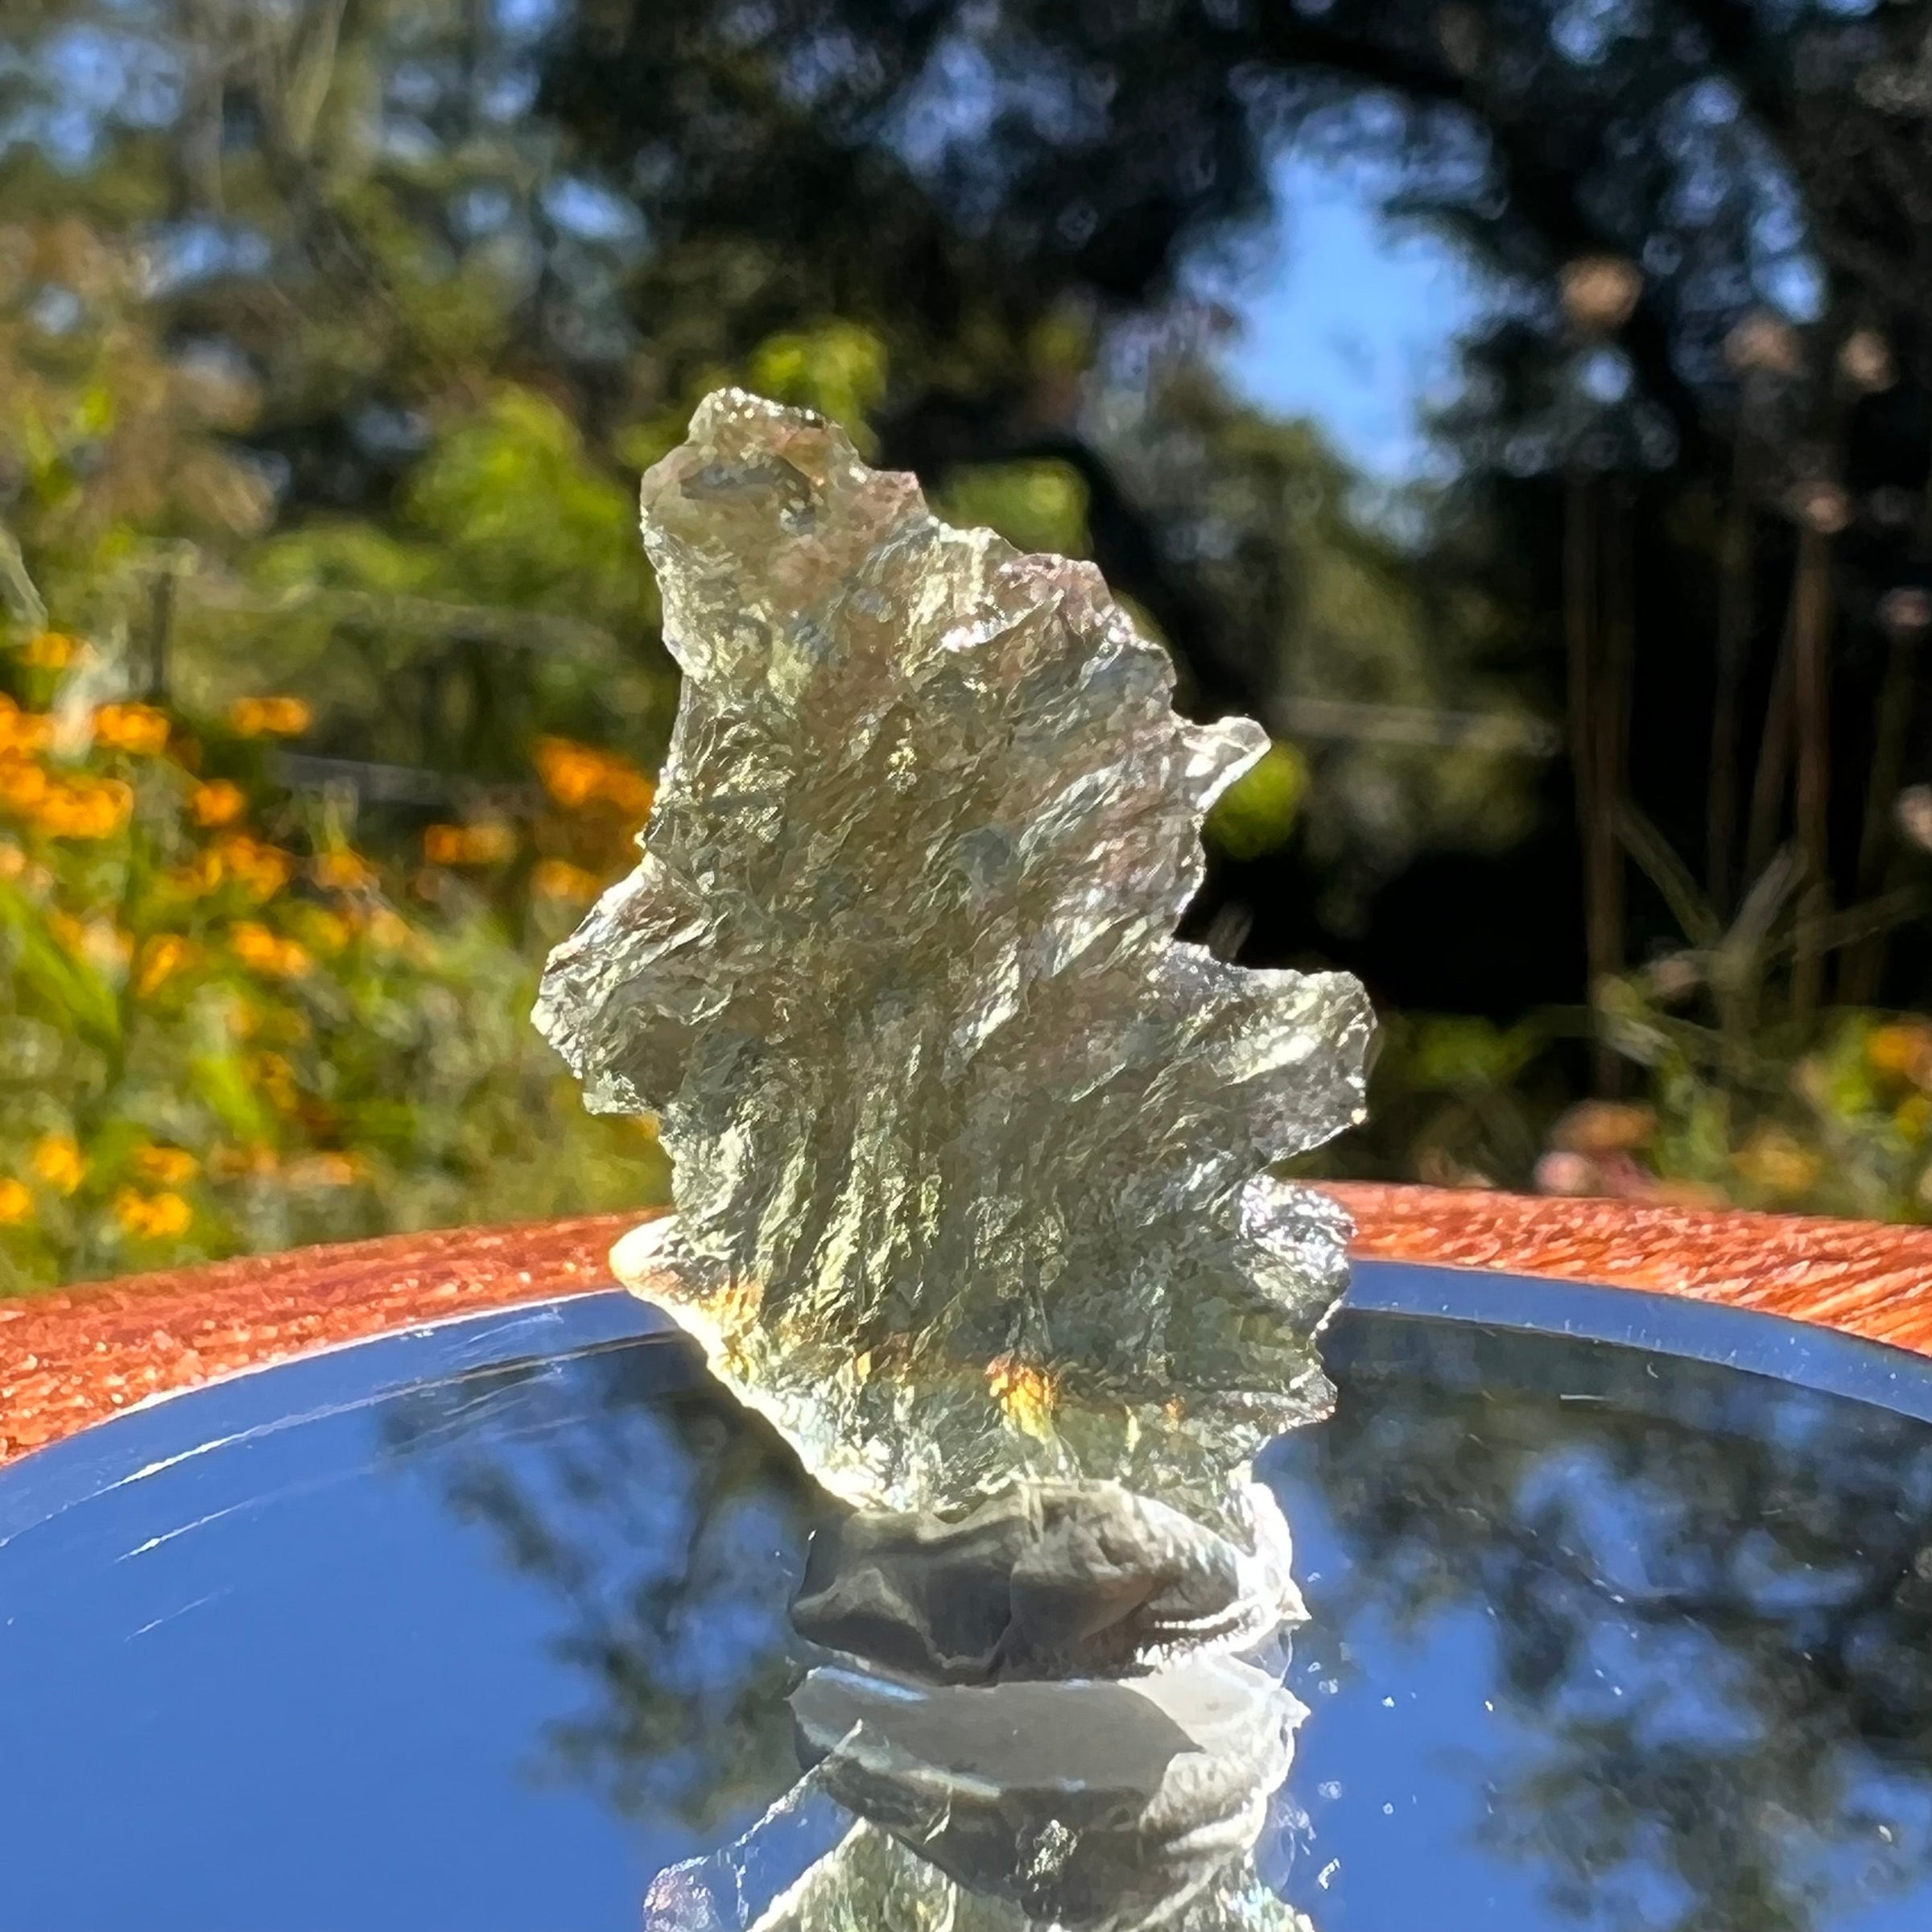 Besednice Moldavite 0.9 grams #371-Moldavite Life